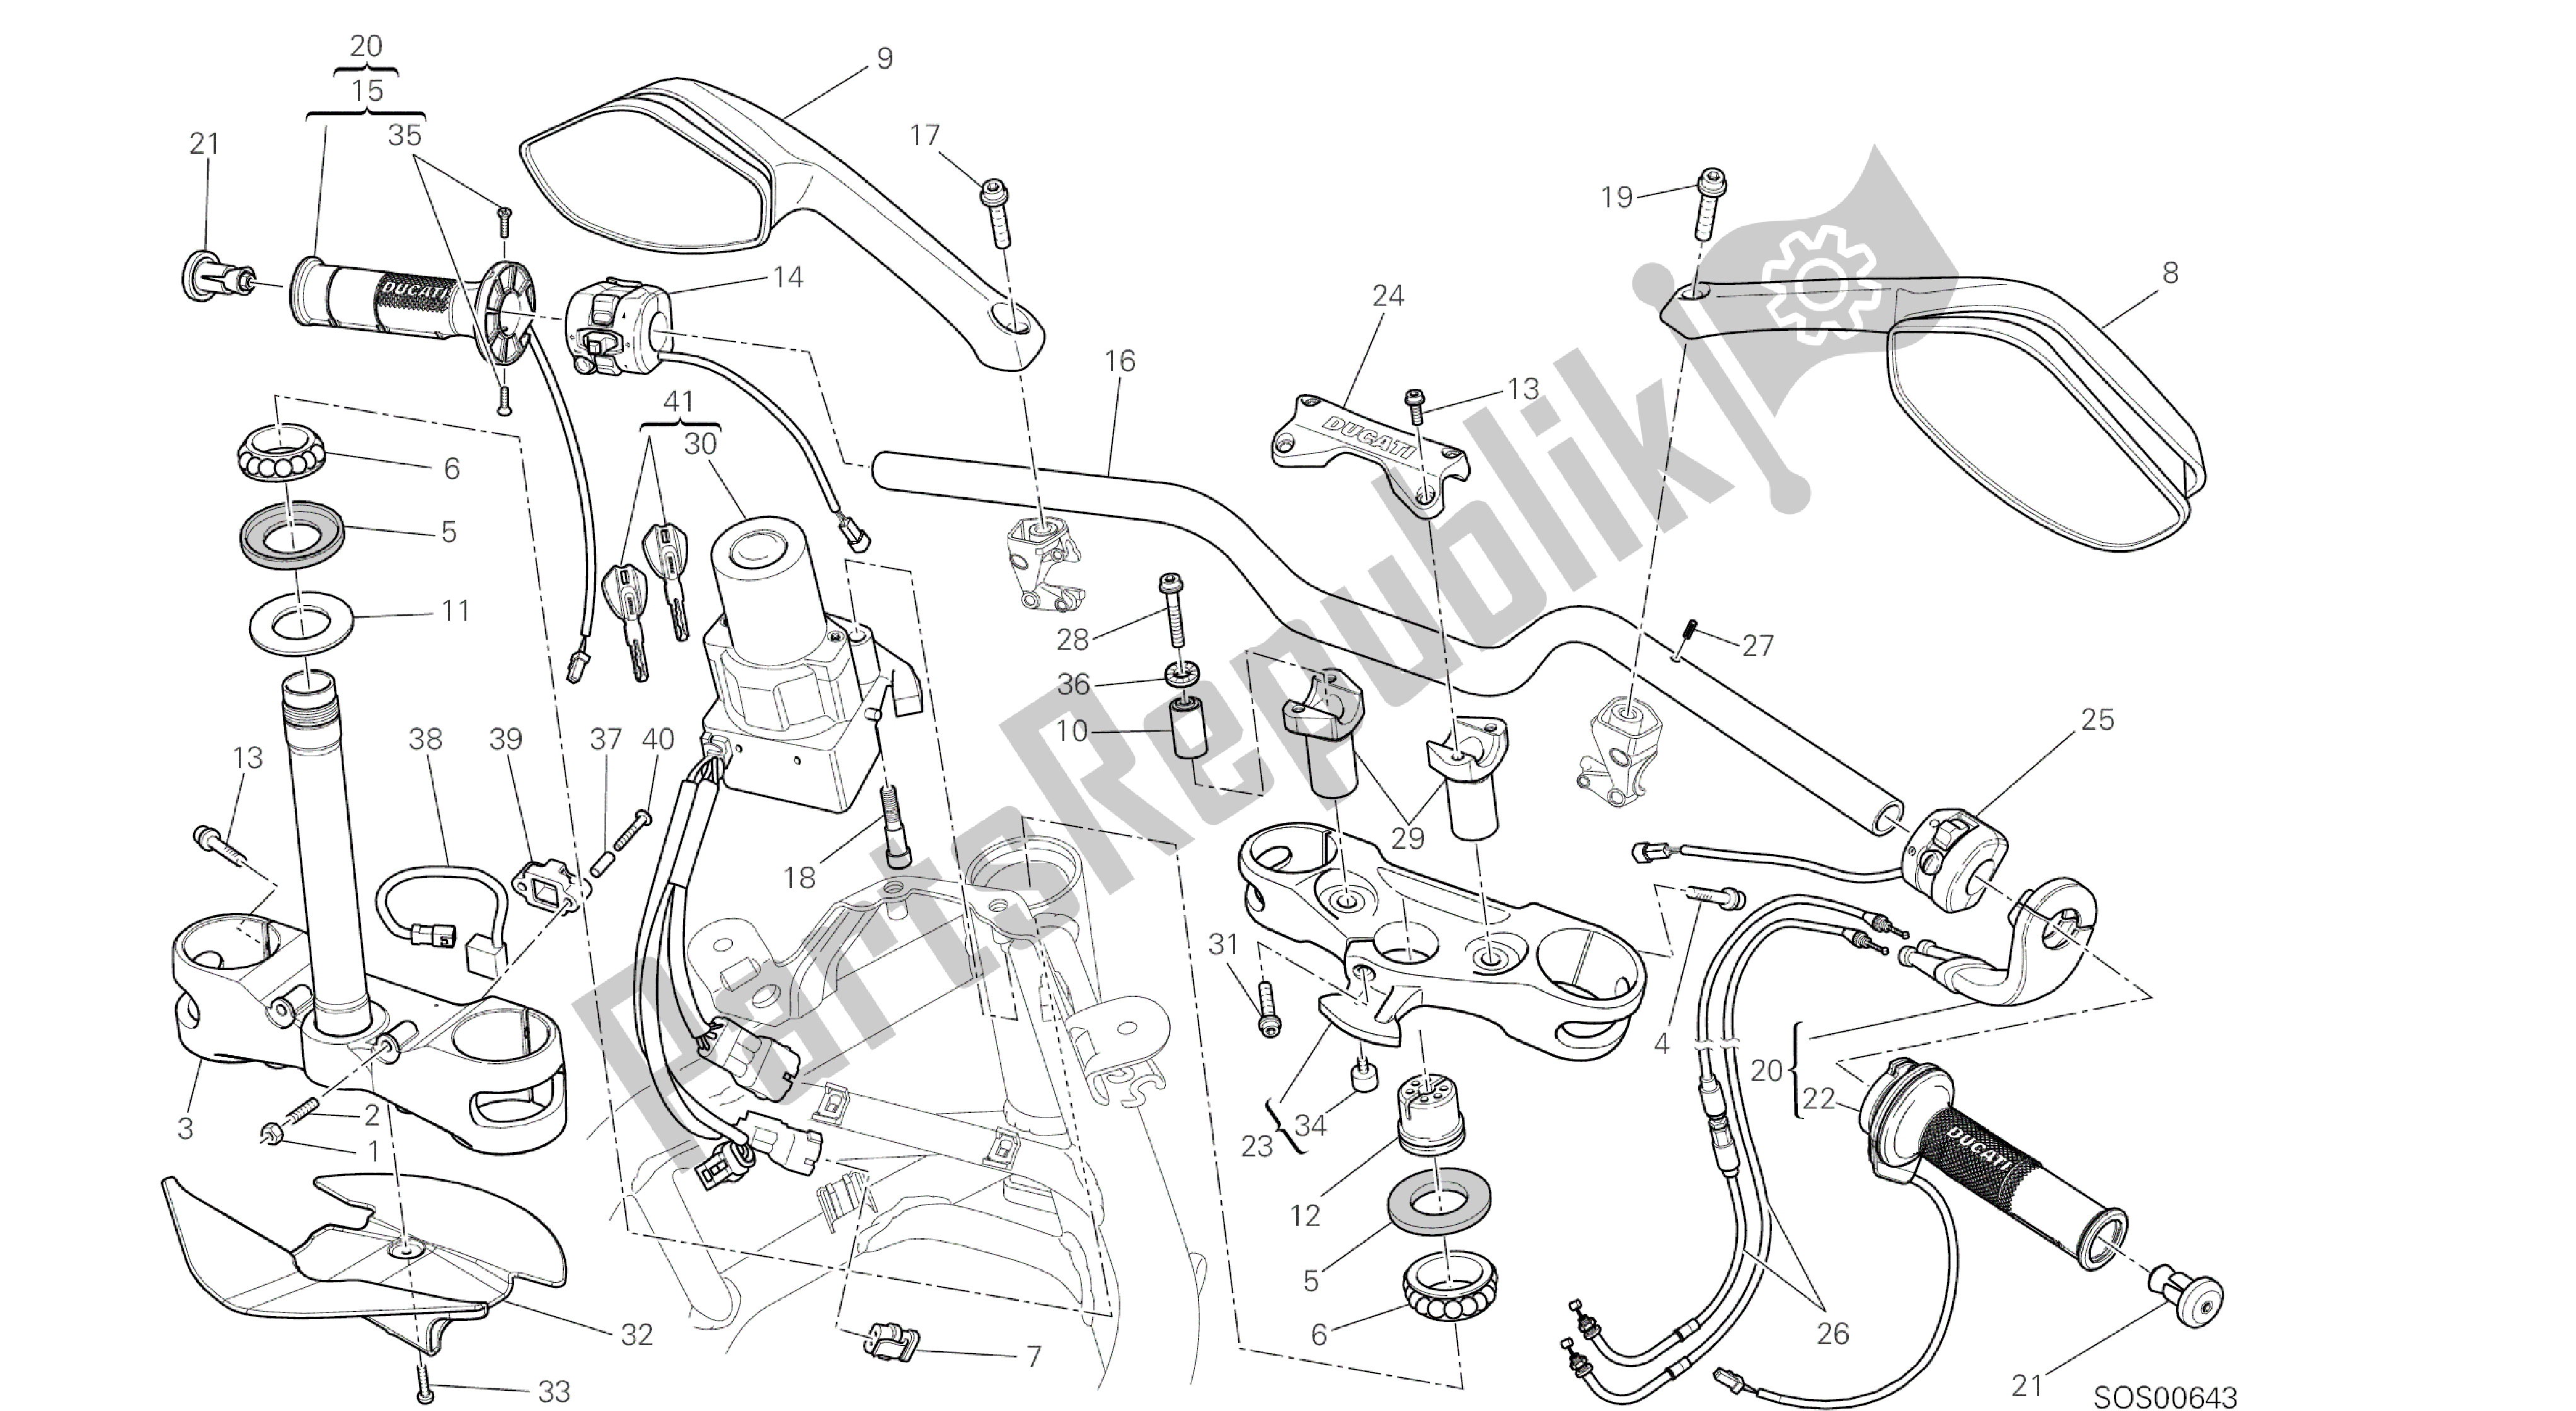 Todas las partes para Dibujo 021 - Manillar [mod: Ms1200st; Xst: Marco De Grupo Aus, Chn, Eur, Fra, Jap, Tha] de Ducati Multistrada S Touring 1200 2014